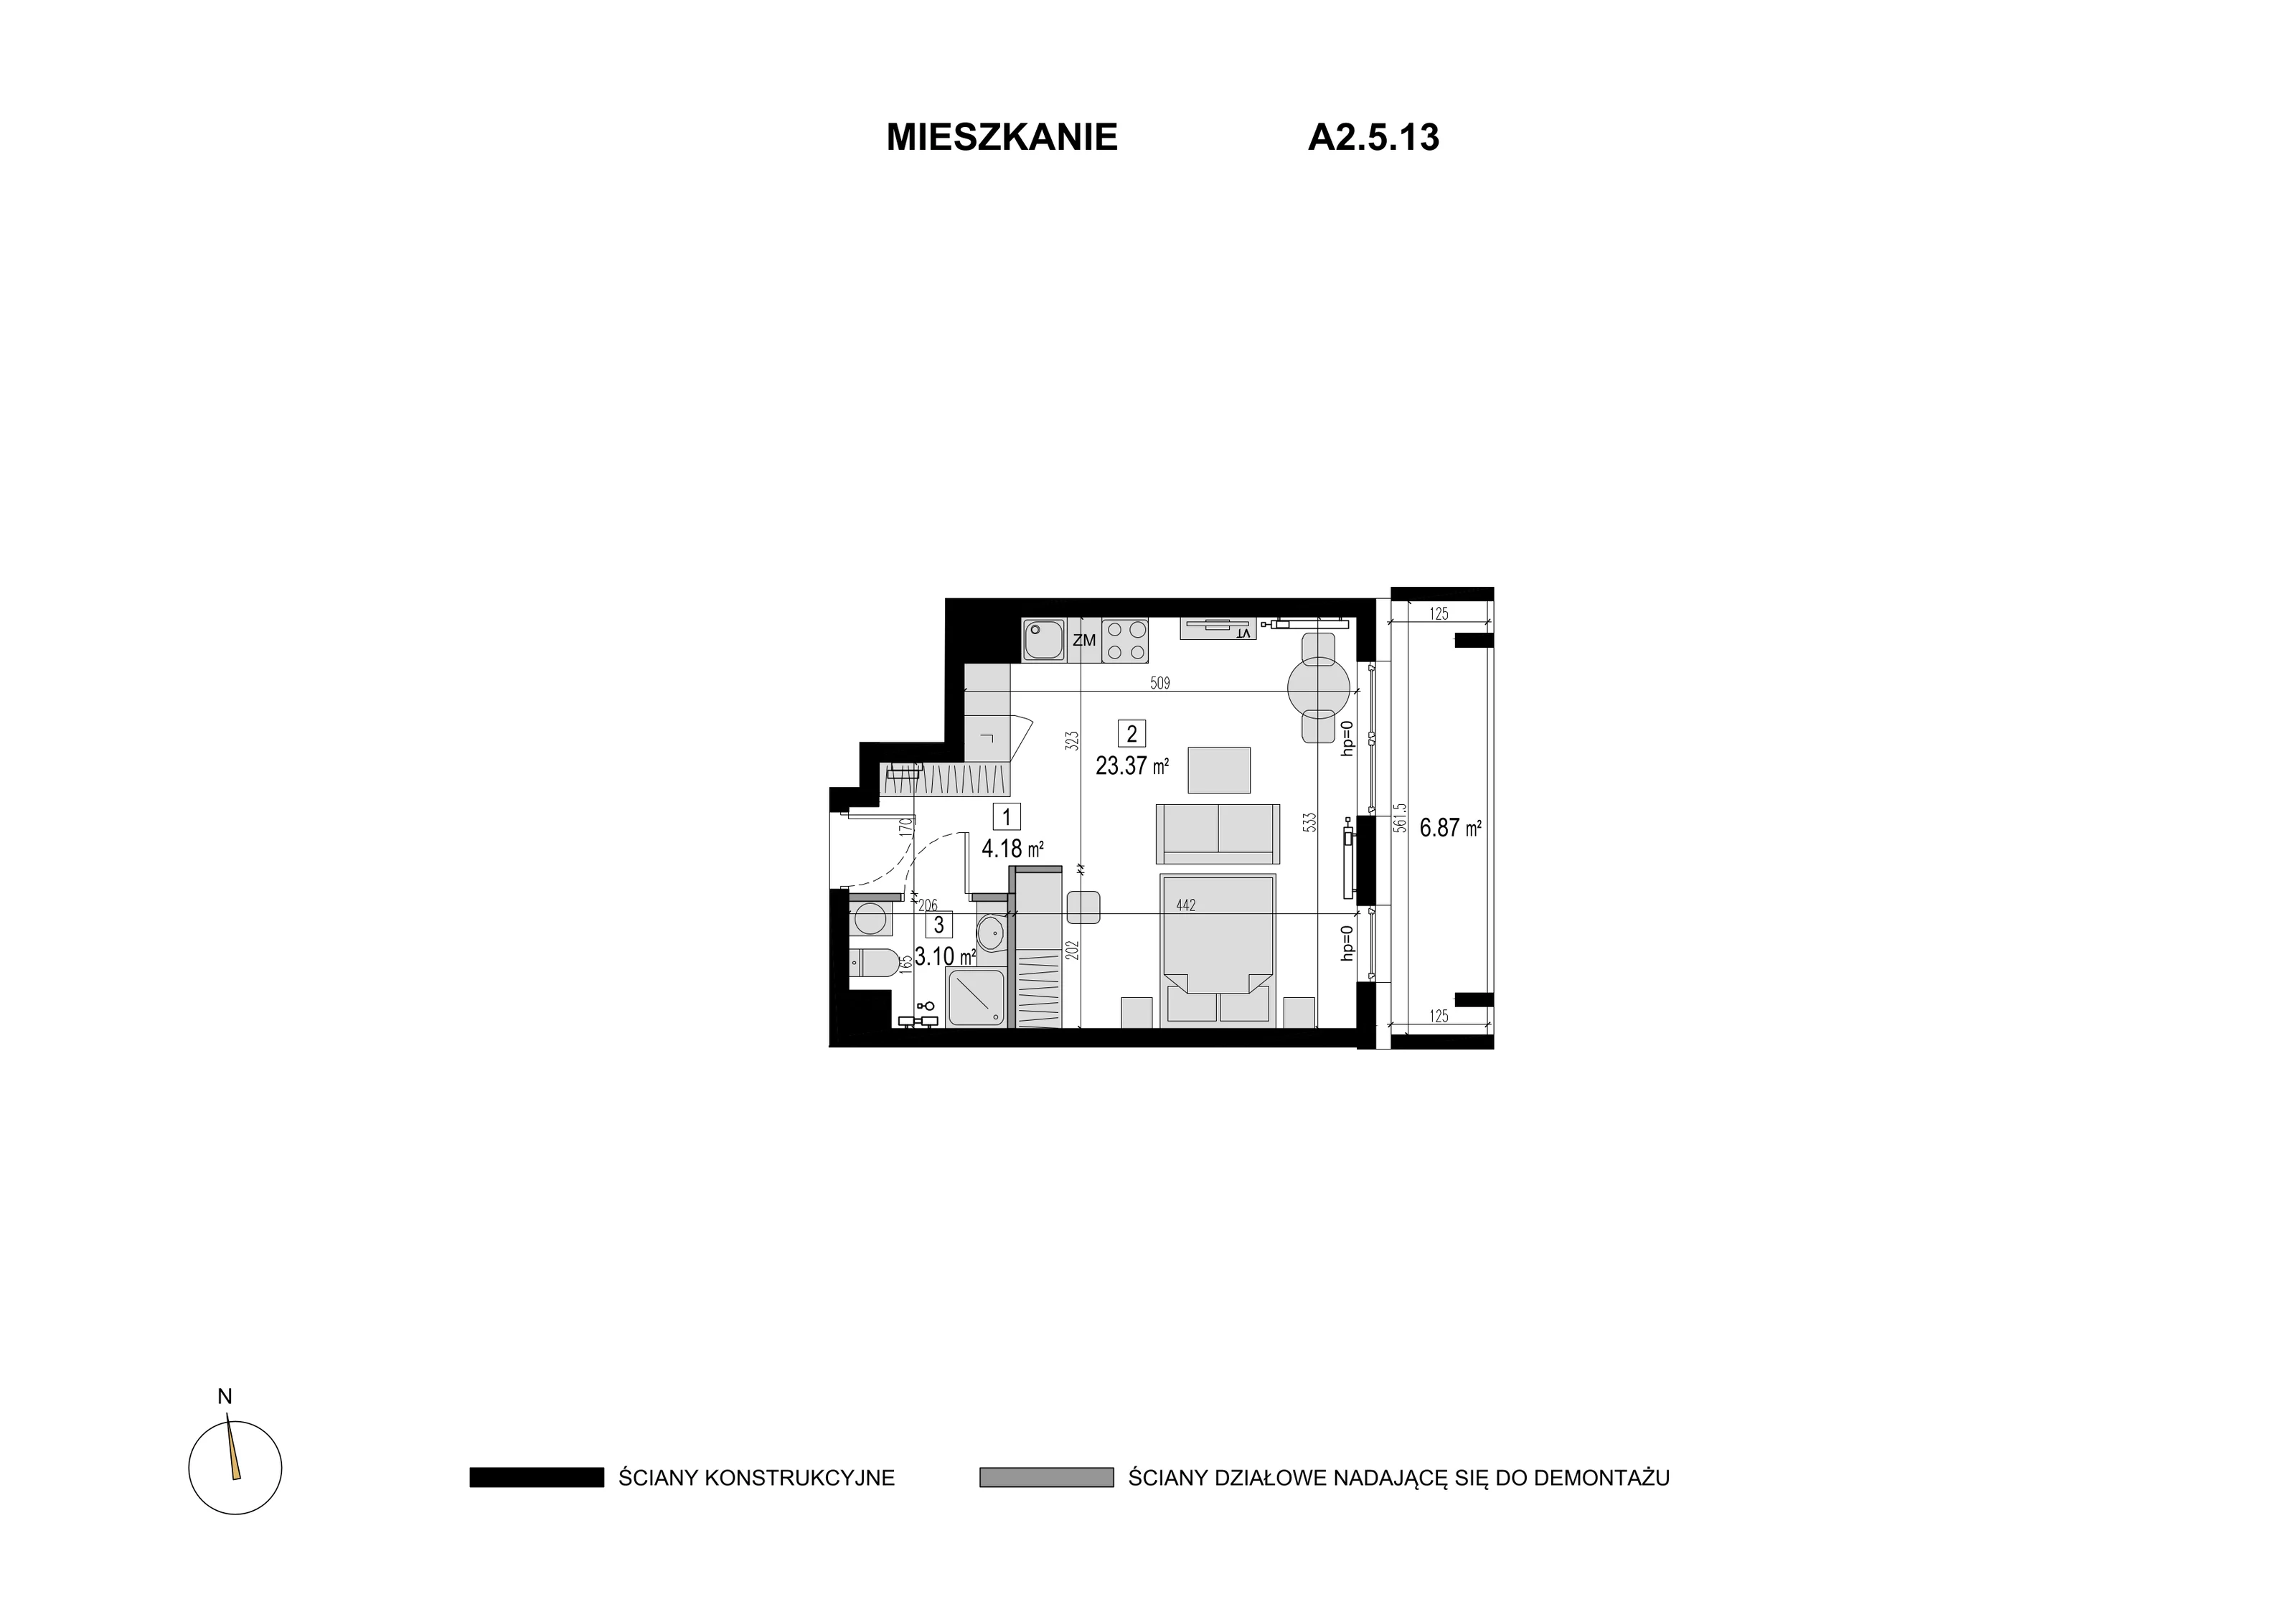 Mieszkanie 30,65 m², piętro 4, oferta nr A2.5.13, Novaforma, Legnica, ul. Chojnowska